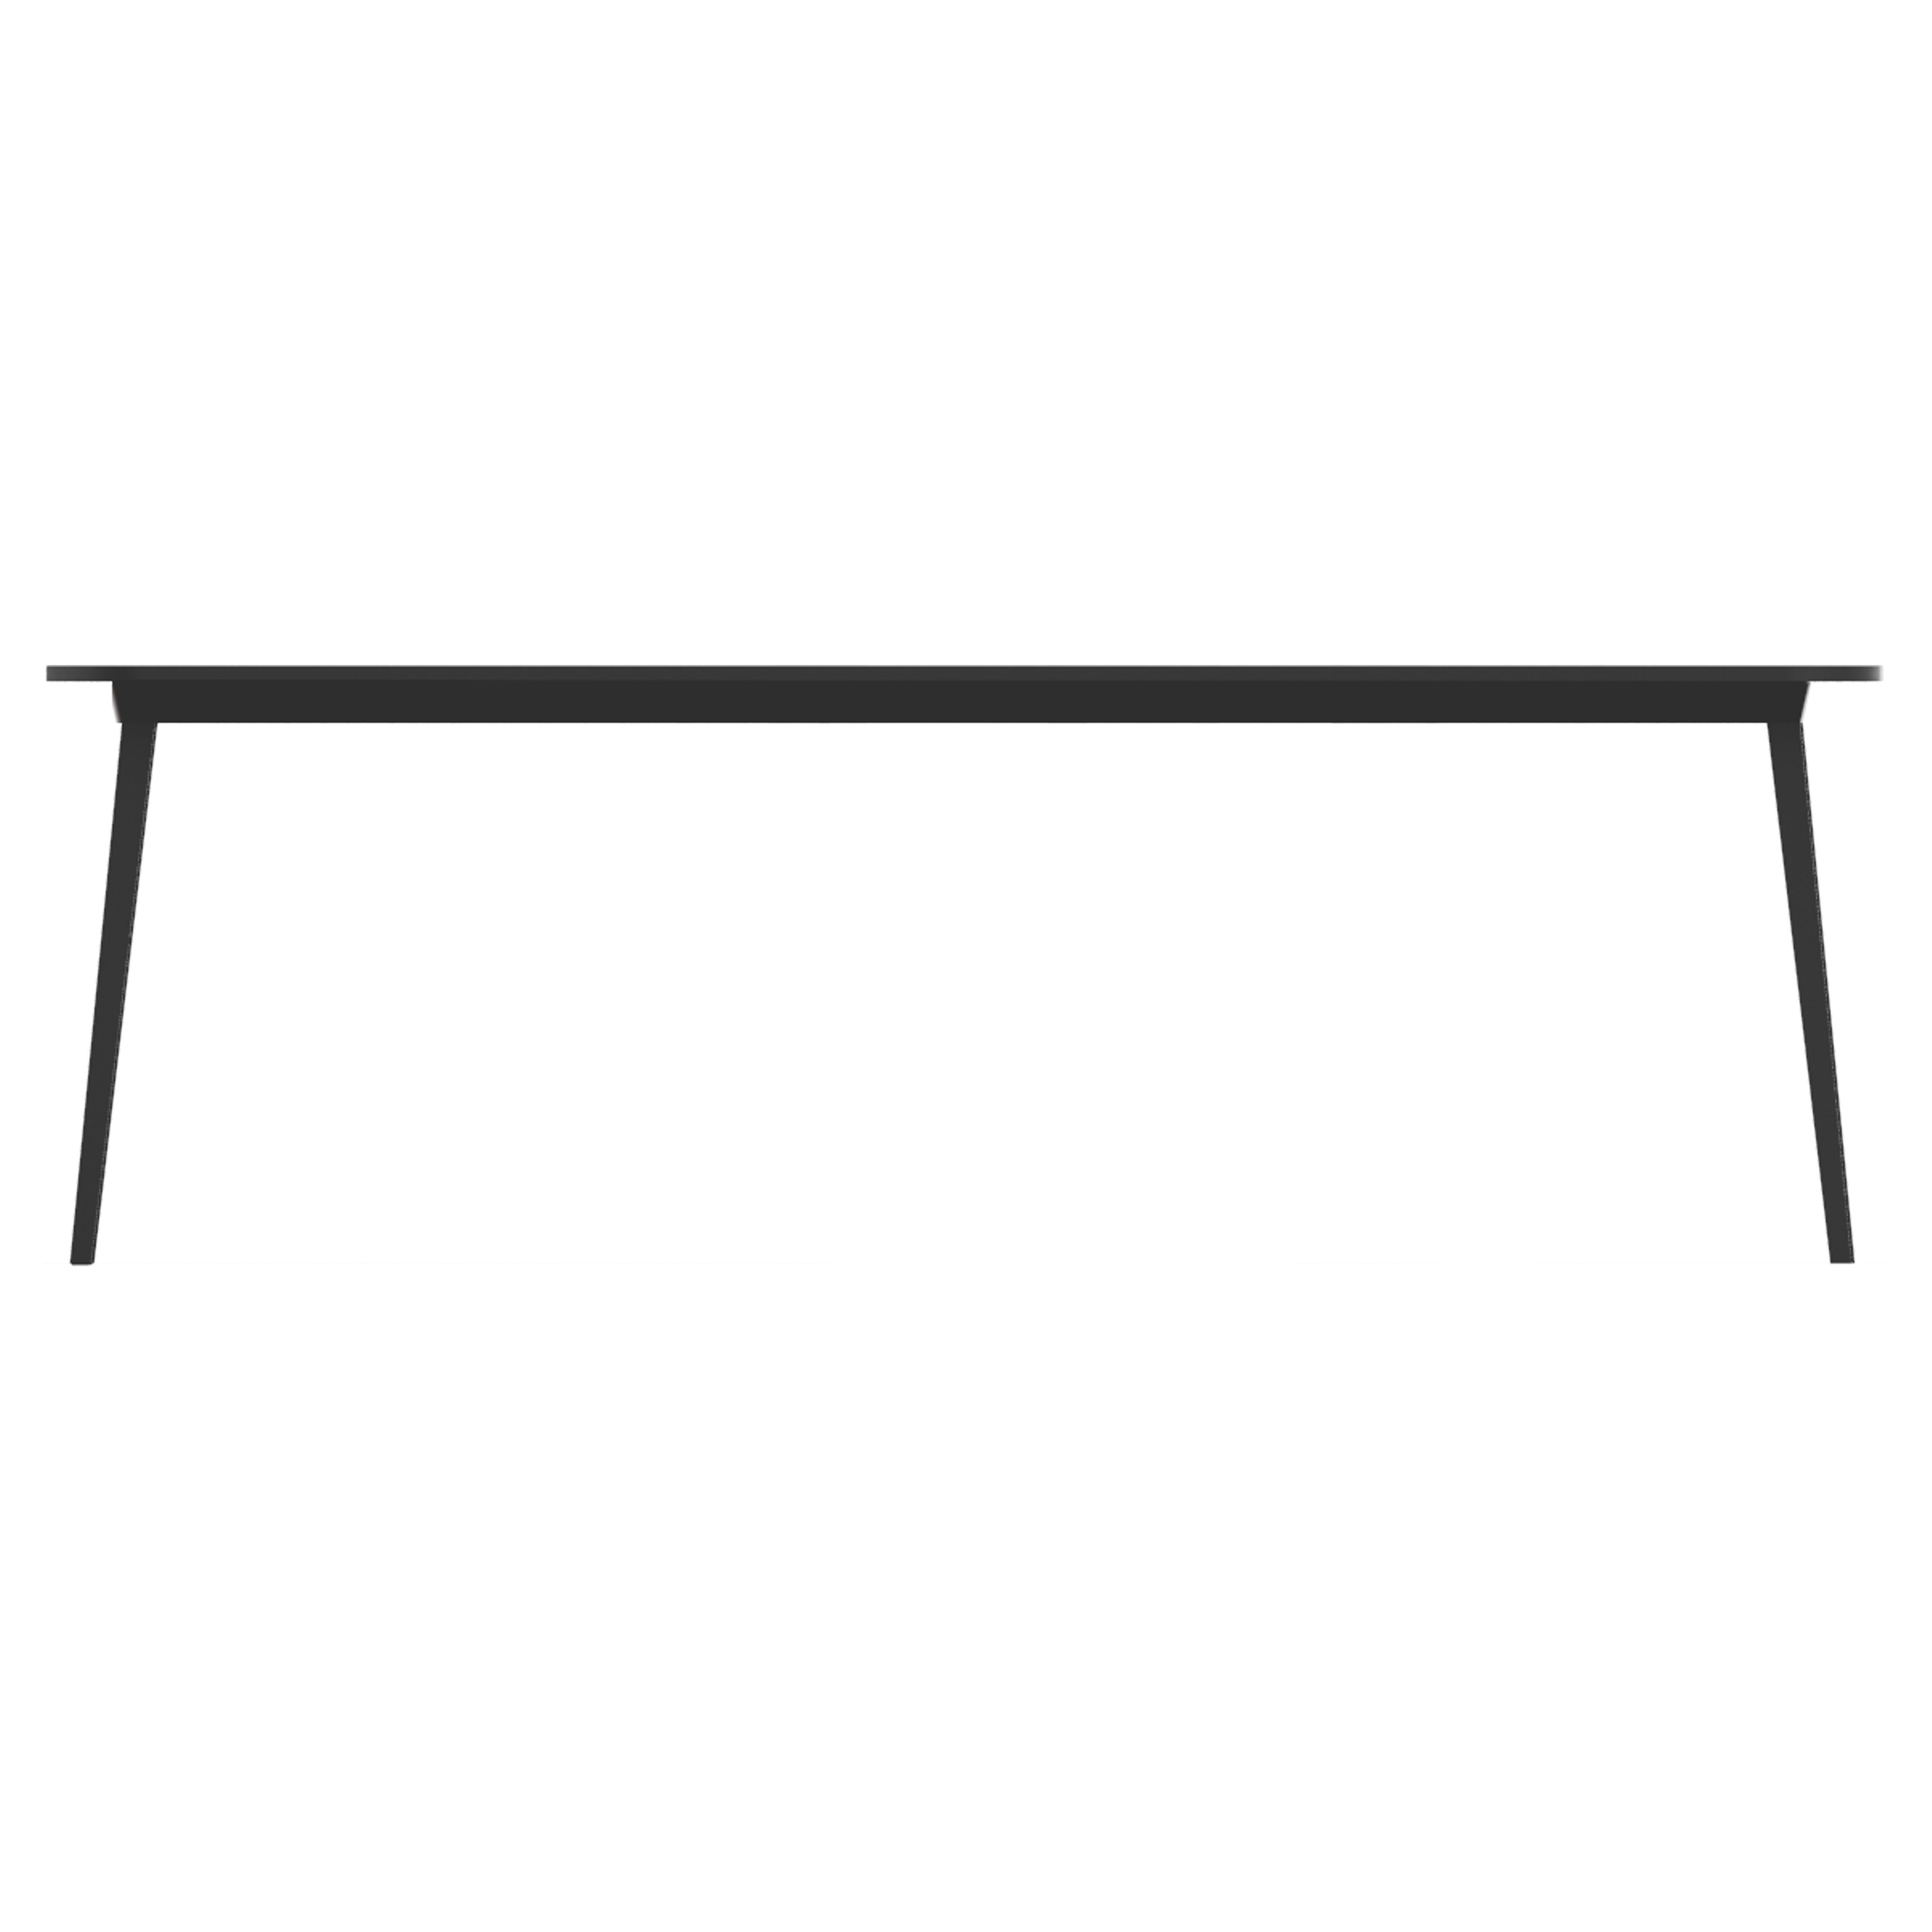 X ist eine Familie von Tischen in verschiedenen Größen, bestehend aus einer ausziehbaren Aluminiumstruktur mit Holzplatte oder aus einem einzigen Material aus schwarzem Kunststoff. Der ausziehbare Tisch bietet Platz für acht Personen, da das Modul